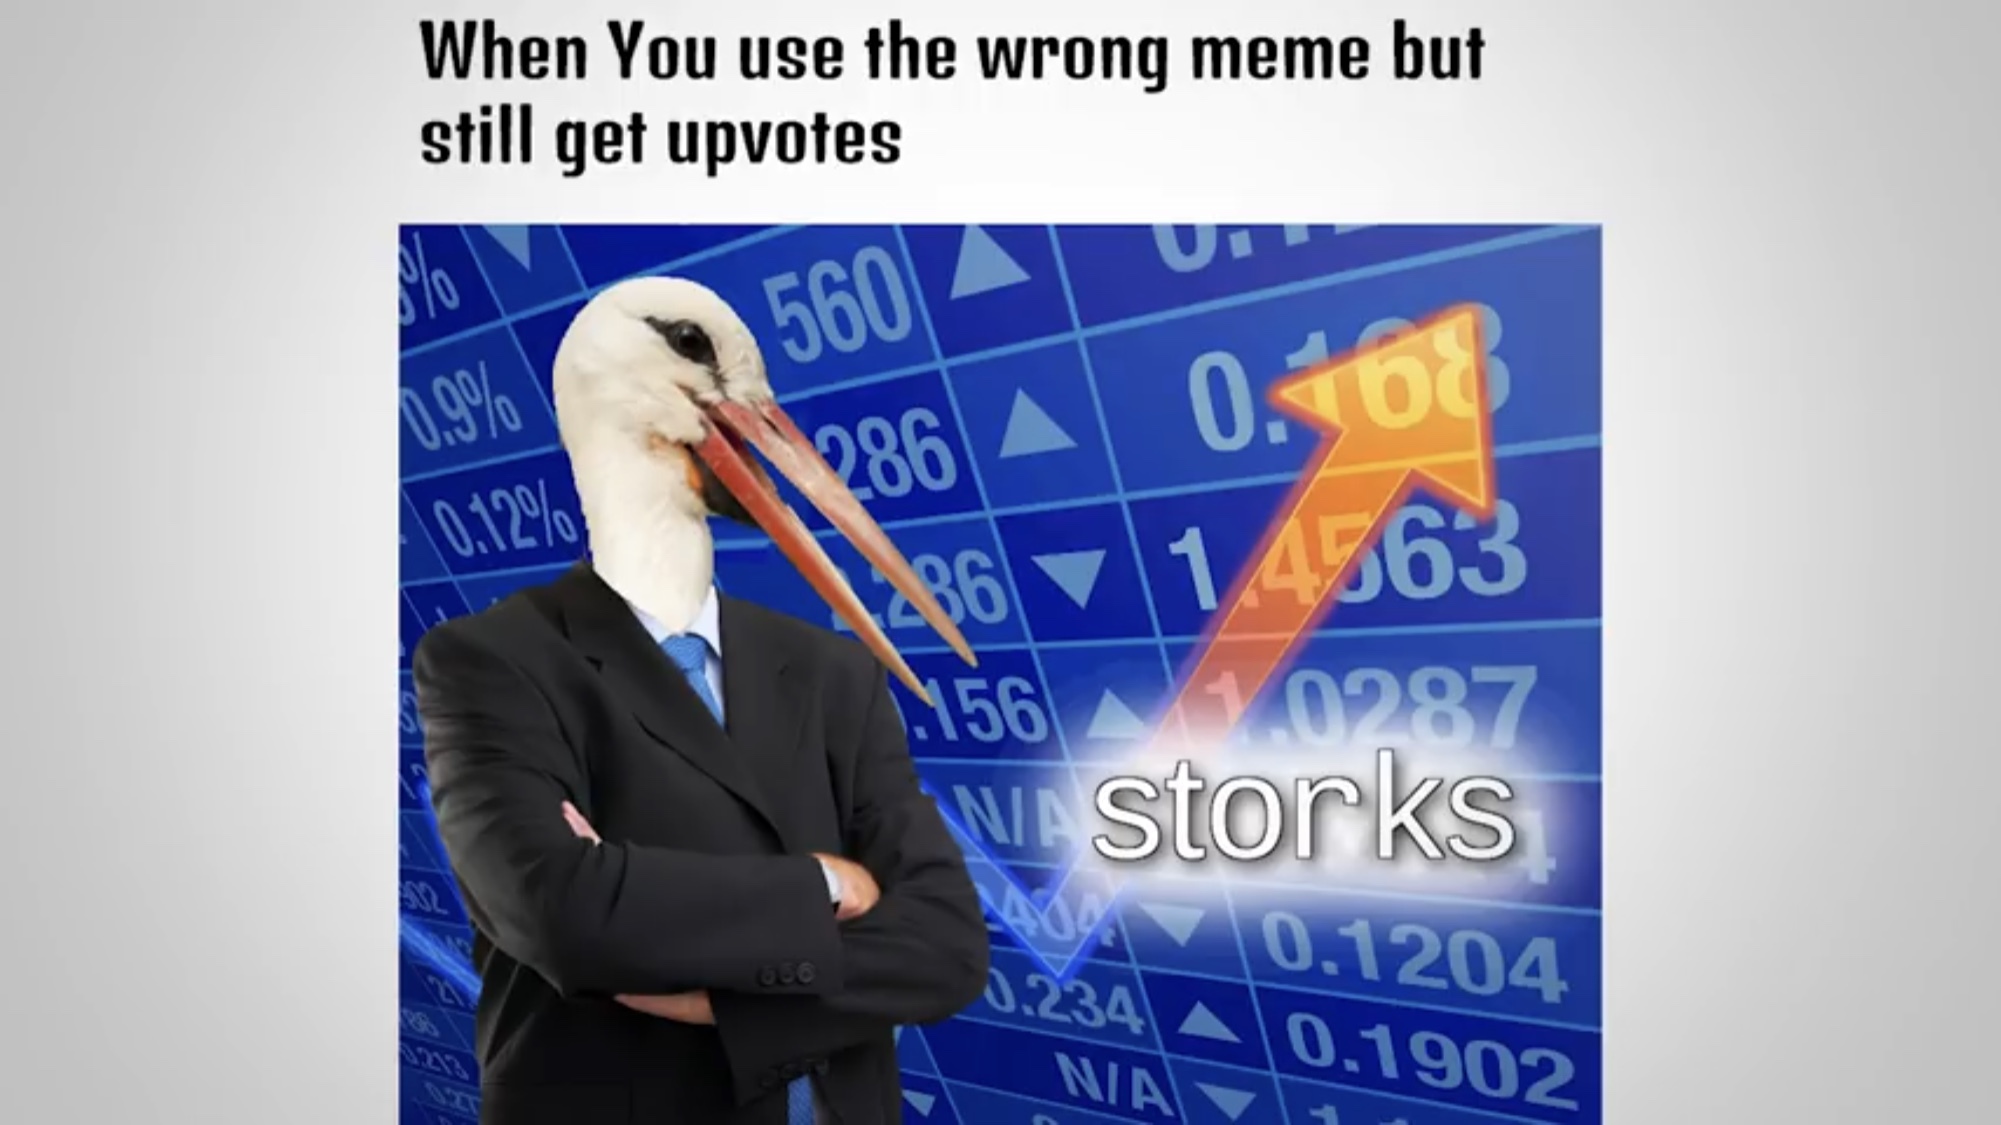 storks - meme